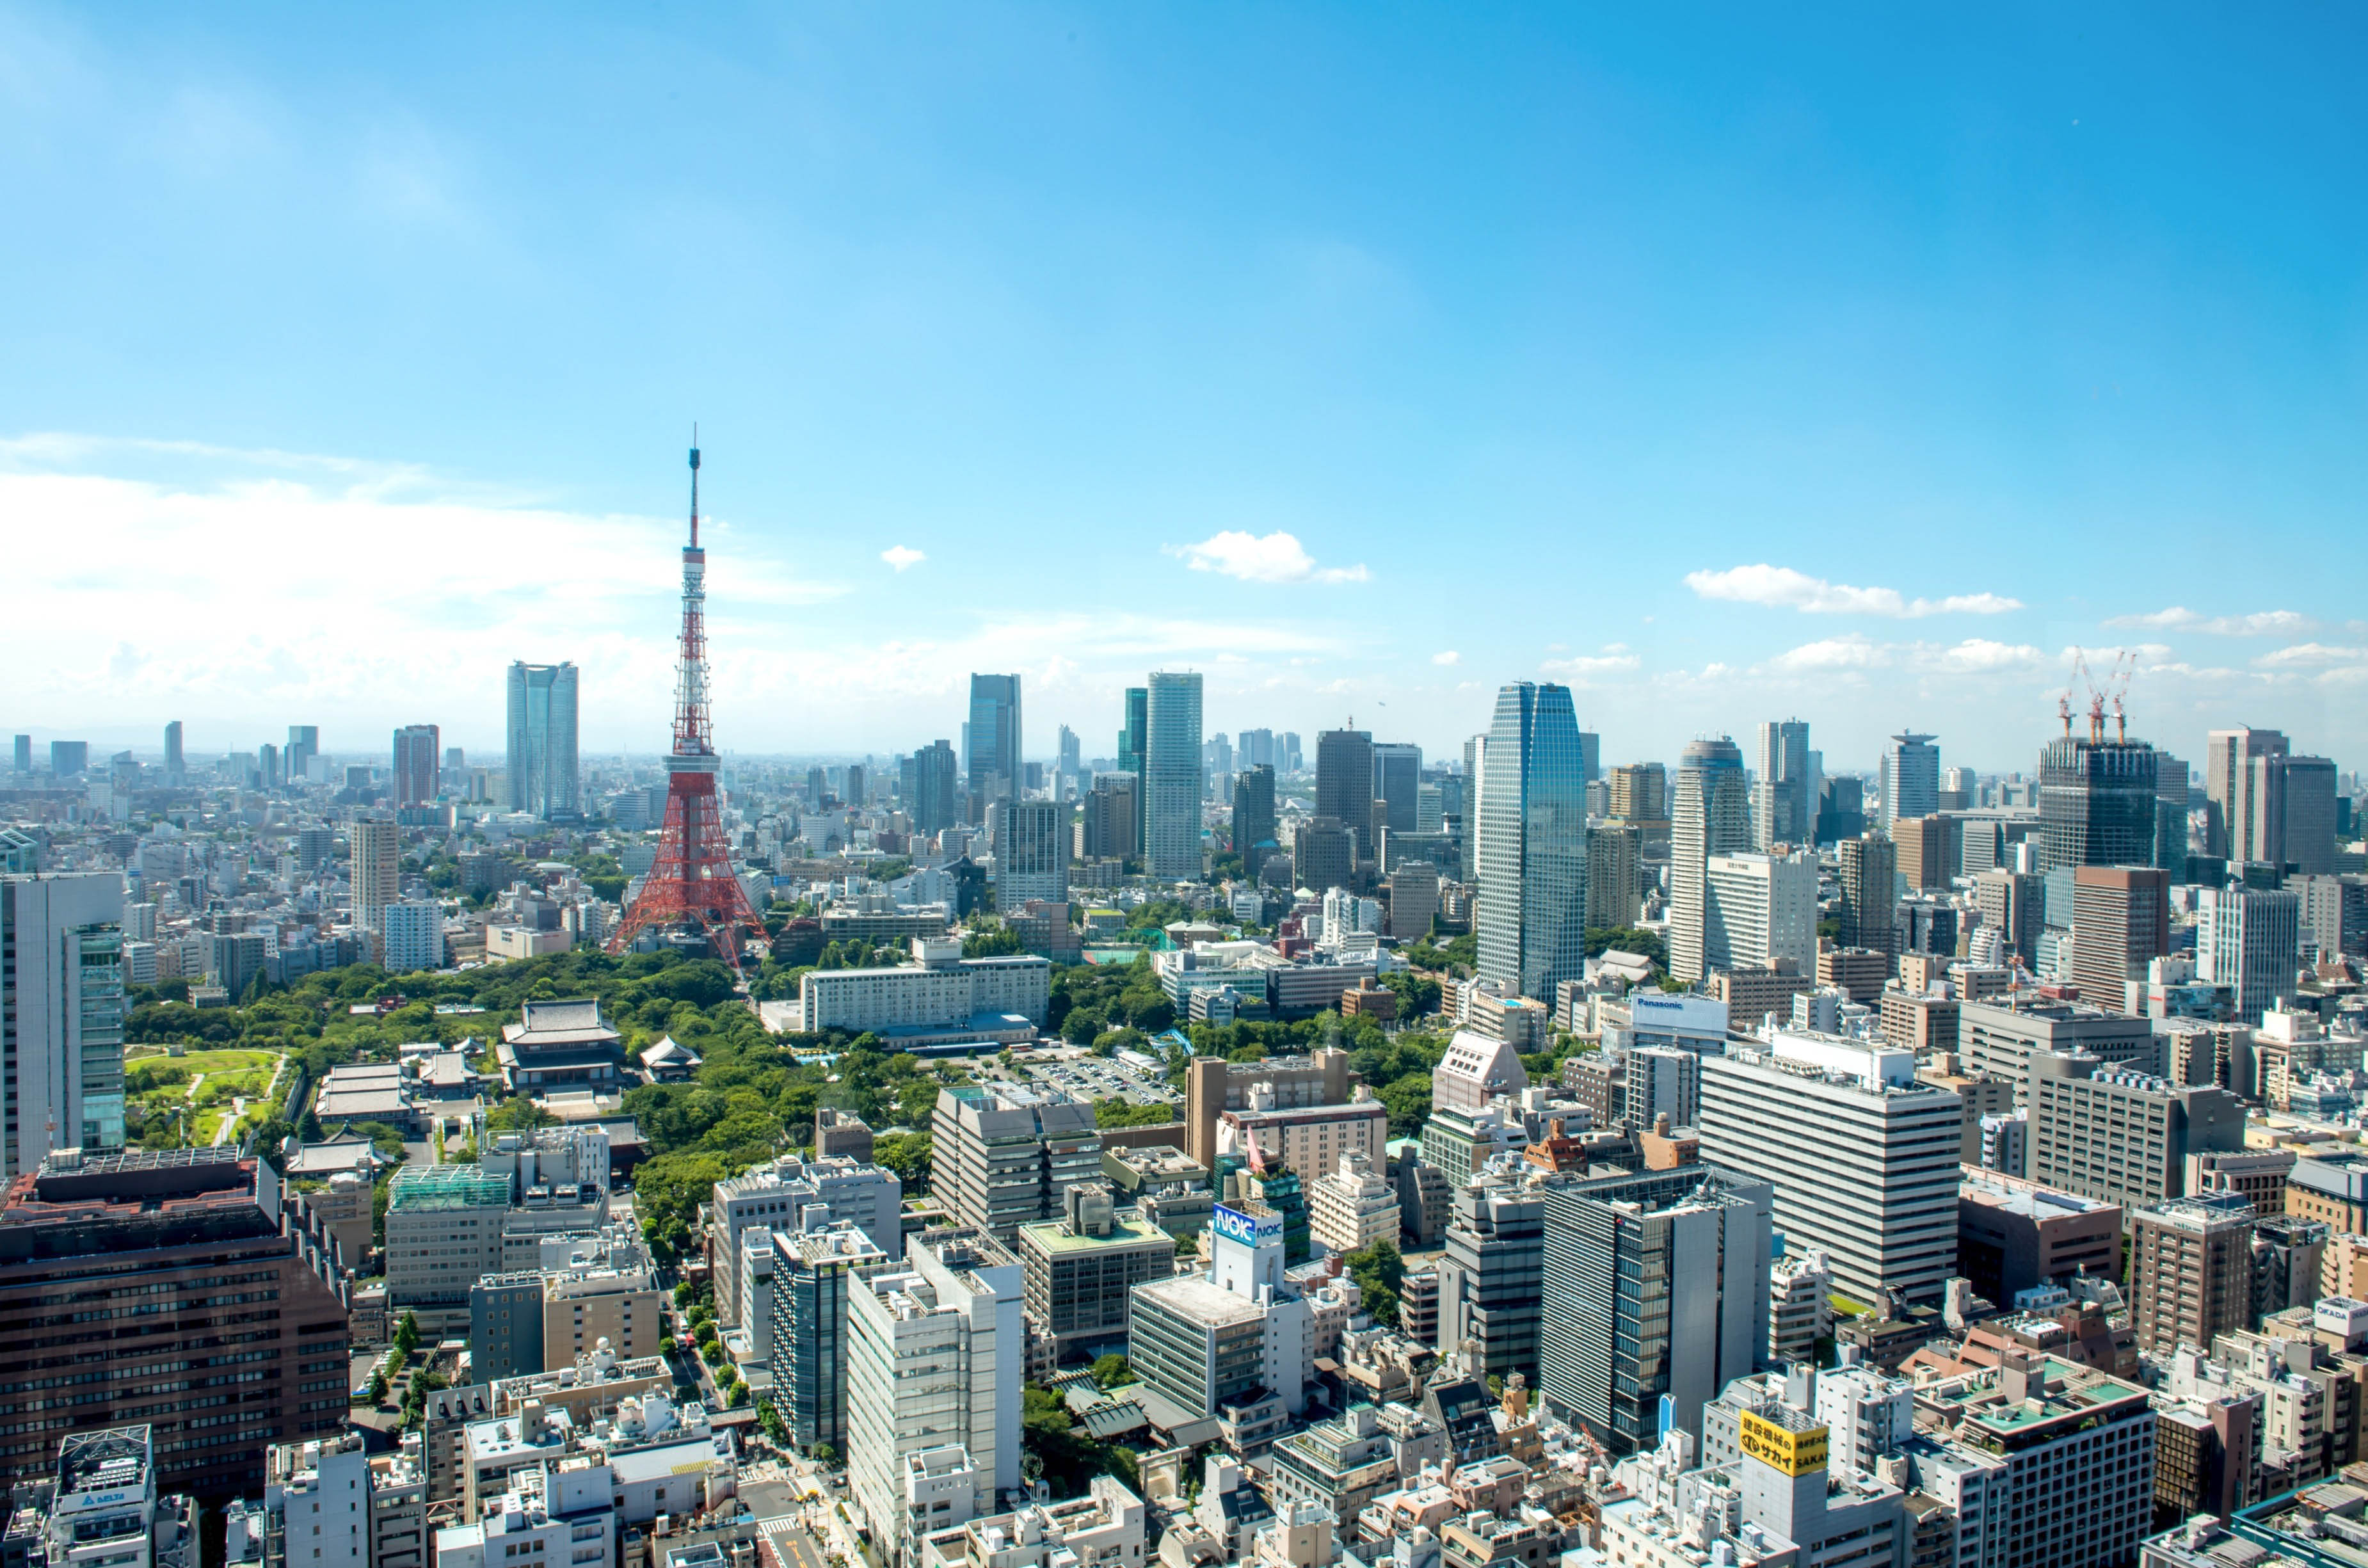 東京タワーの壁紙,都市の景観,市,首都圏,市街地,スカイライン